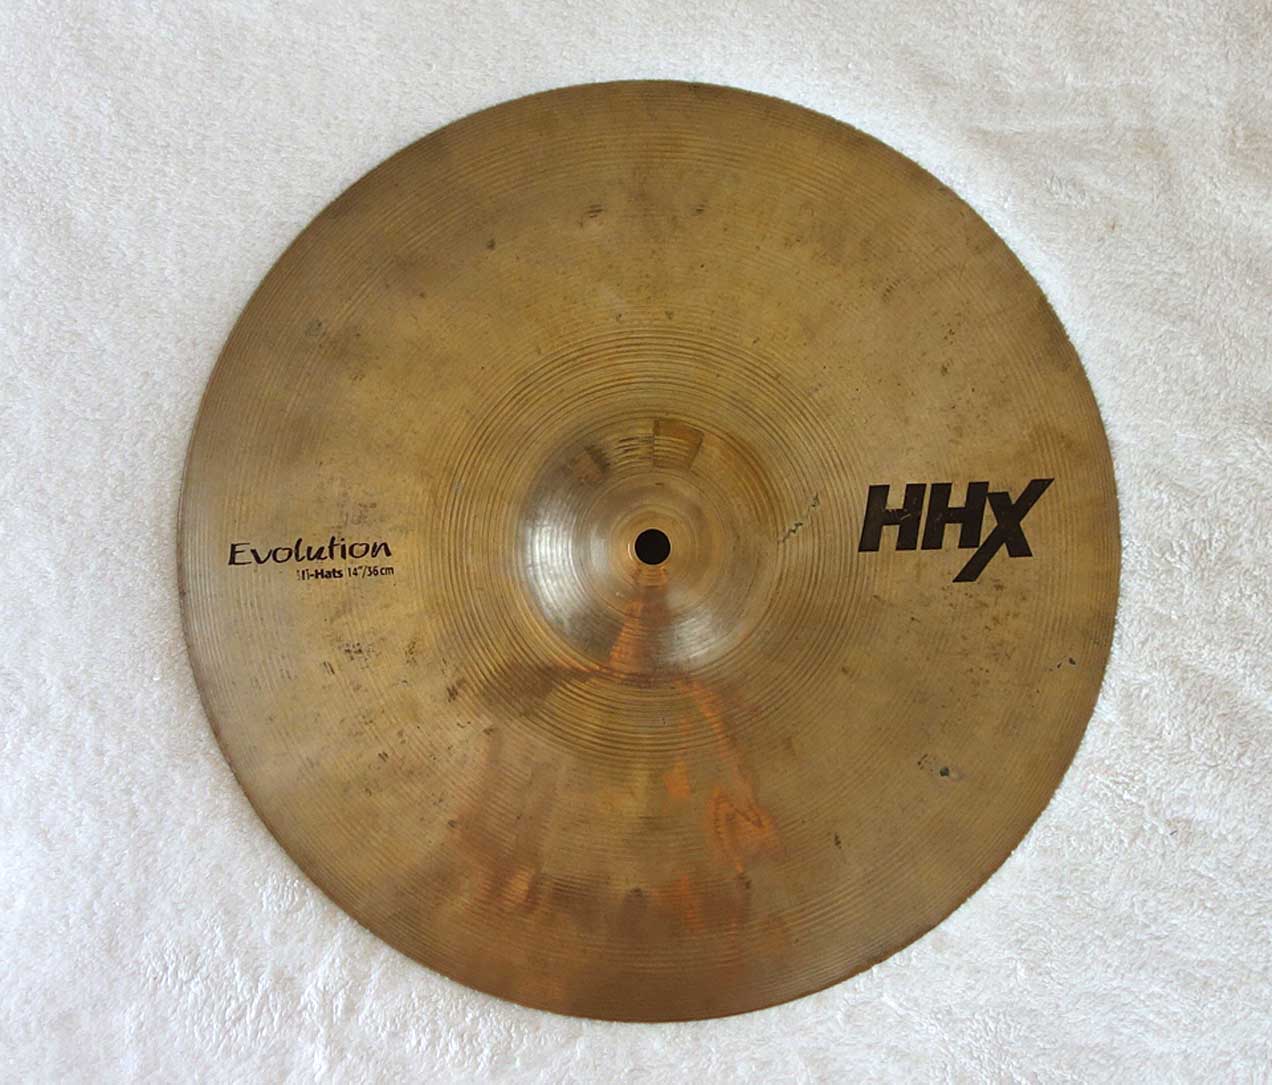 Sabian HHX Evolution 14" Hi-Hat Top (924g)